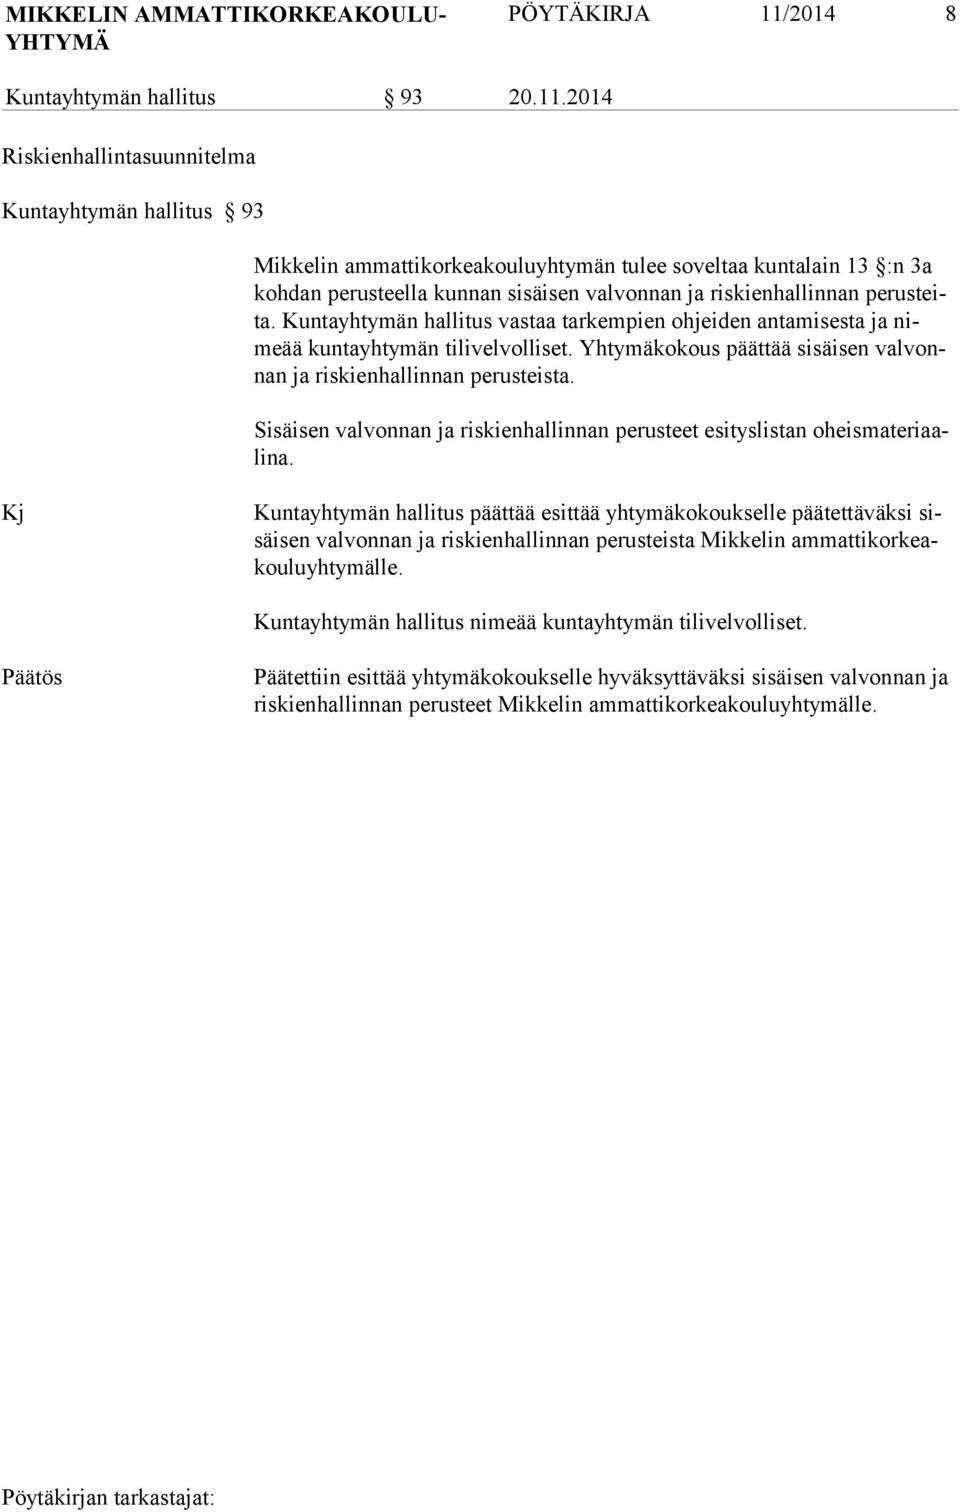 2014 Riskienhallintasuunnitelma Kuntayhtymän hallitus 93 Mikkelin ammattikorkeakouluyhtymän tulee soveltaa kuntalain 13 :n 3a koh dan pe rusteella kunnan sisäisen valvonnan ja riskienhallinnan